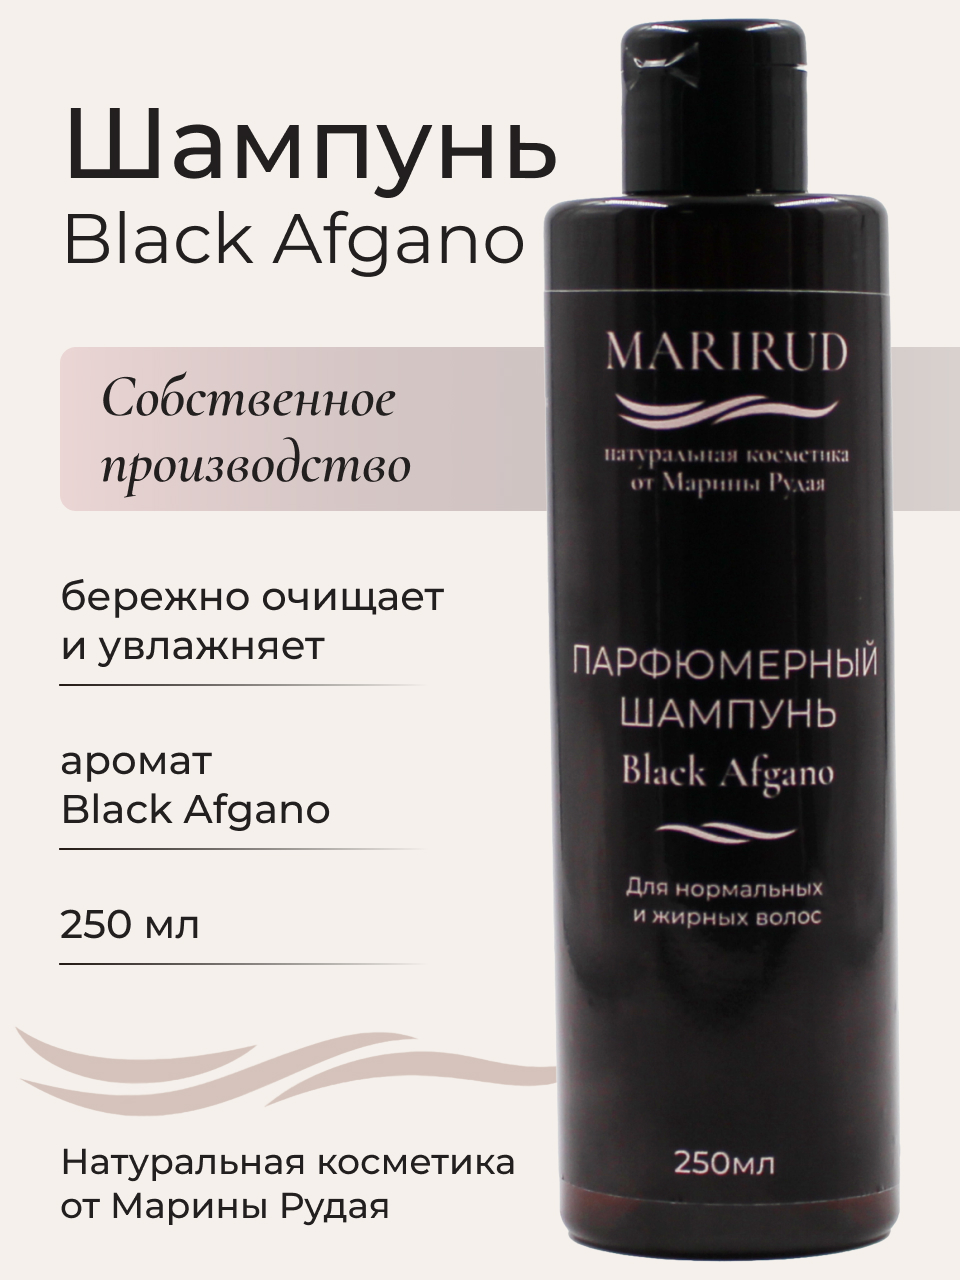 Набор парфюмерный- Шампуни Black Afgano и Tobacco Vanille набор против выпадения волос sdl scalp renew kit 2020